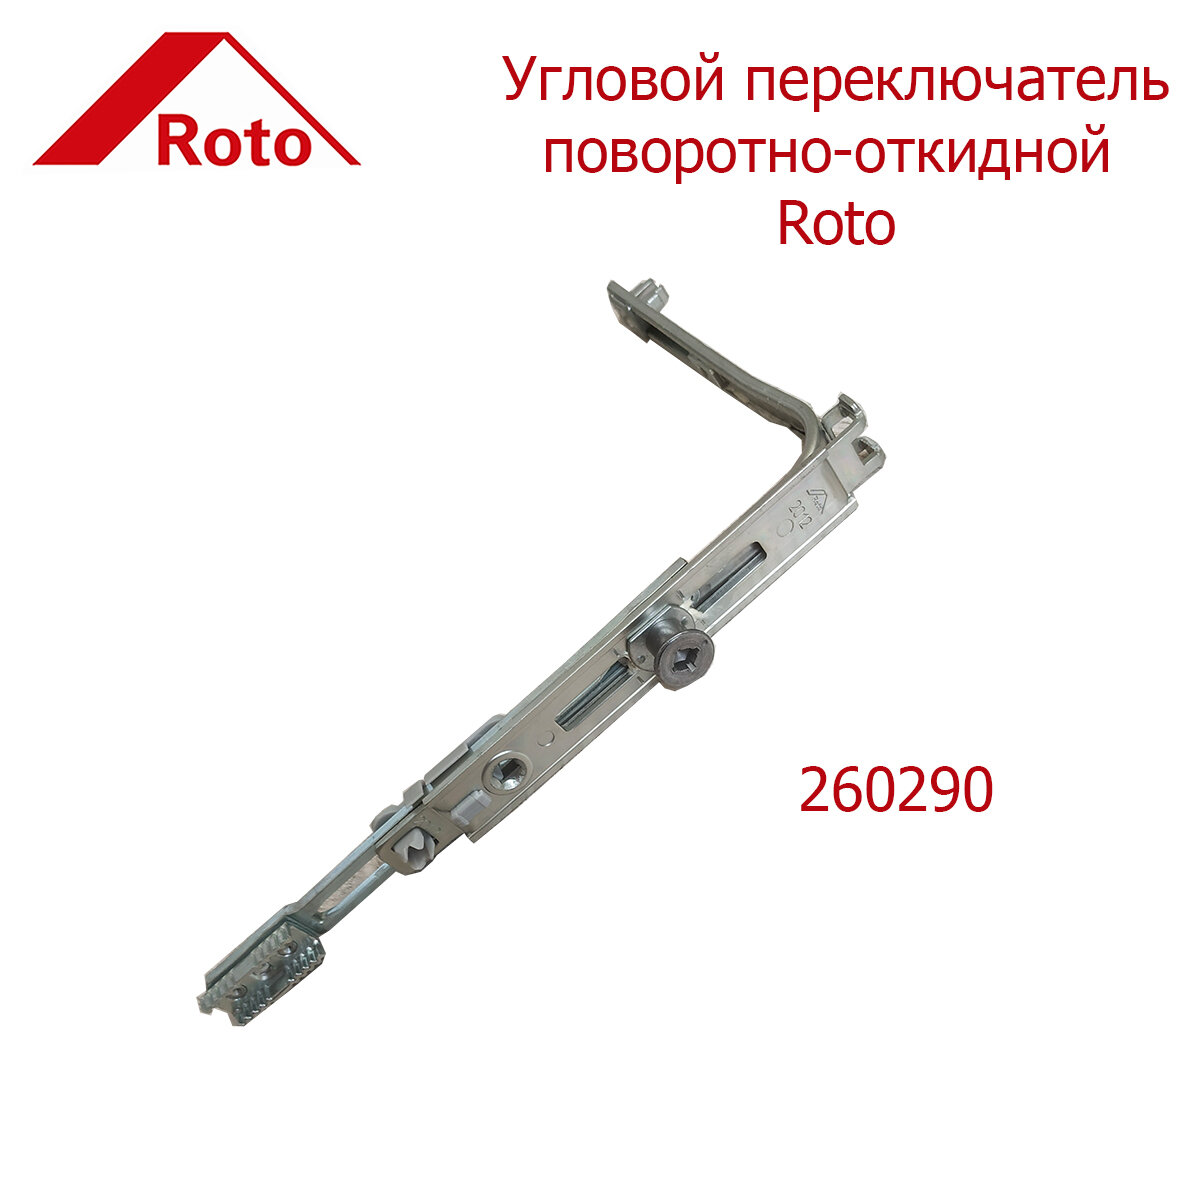 Угловой переключатель Roto 260290